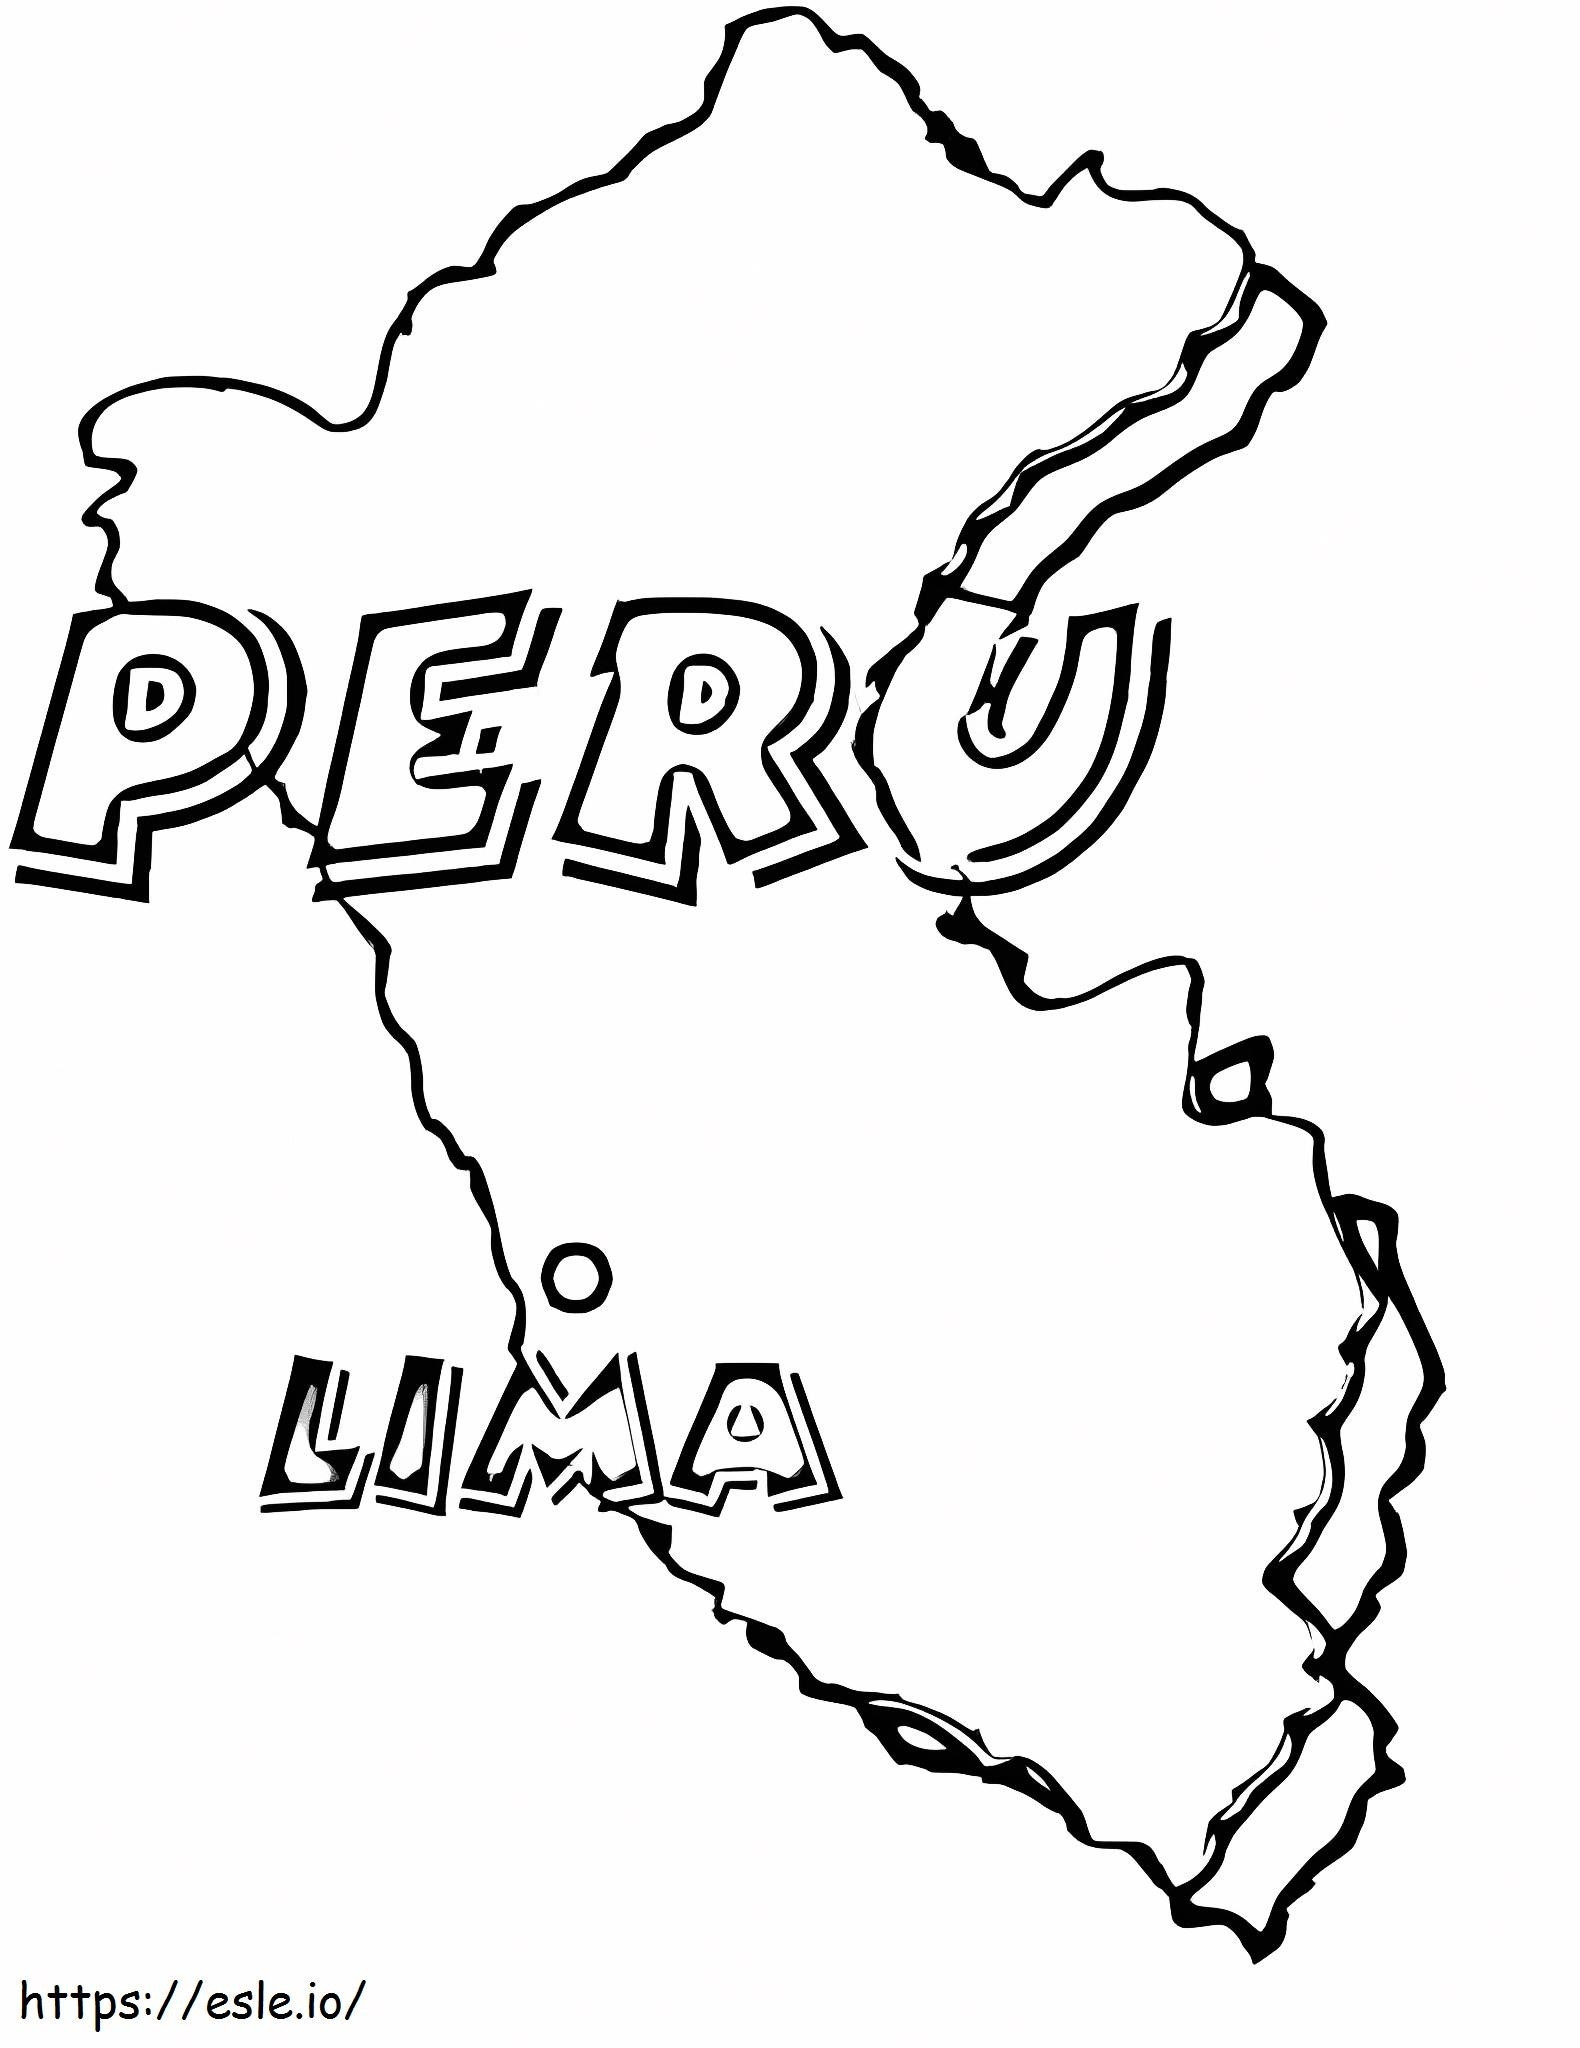 Mapa De Perú para colorear